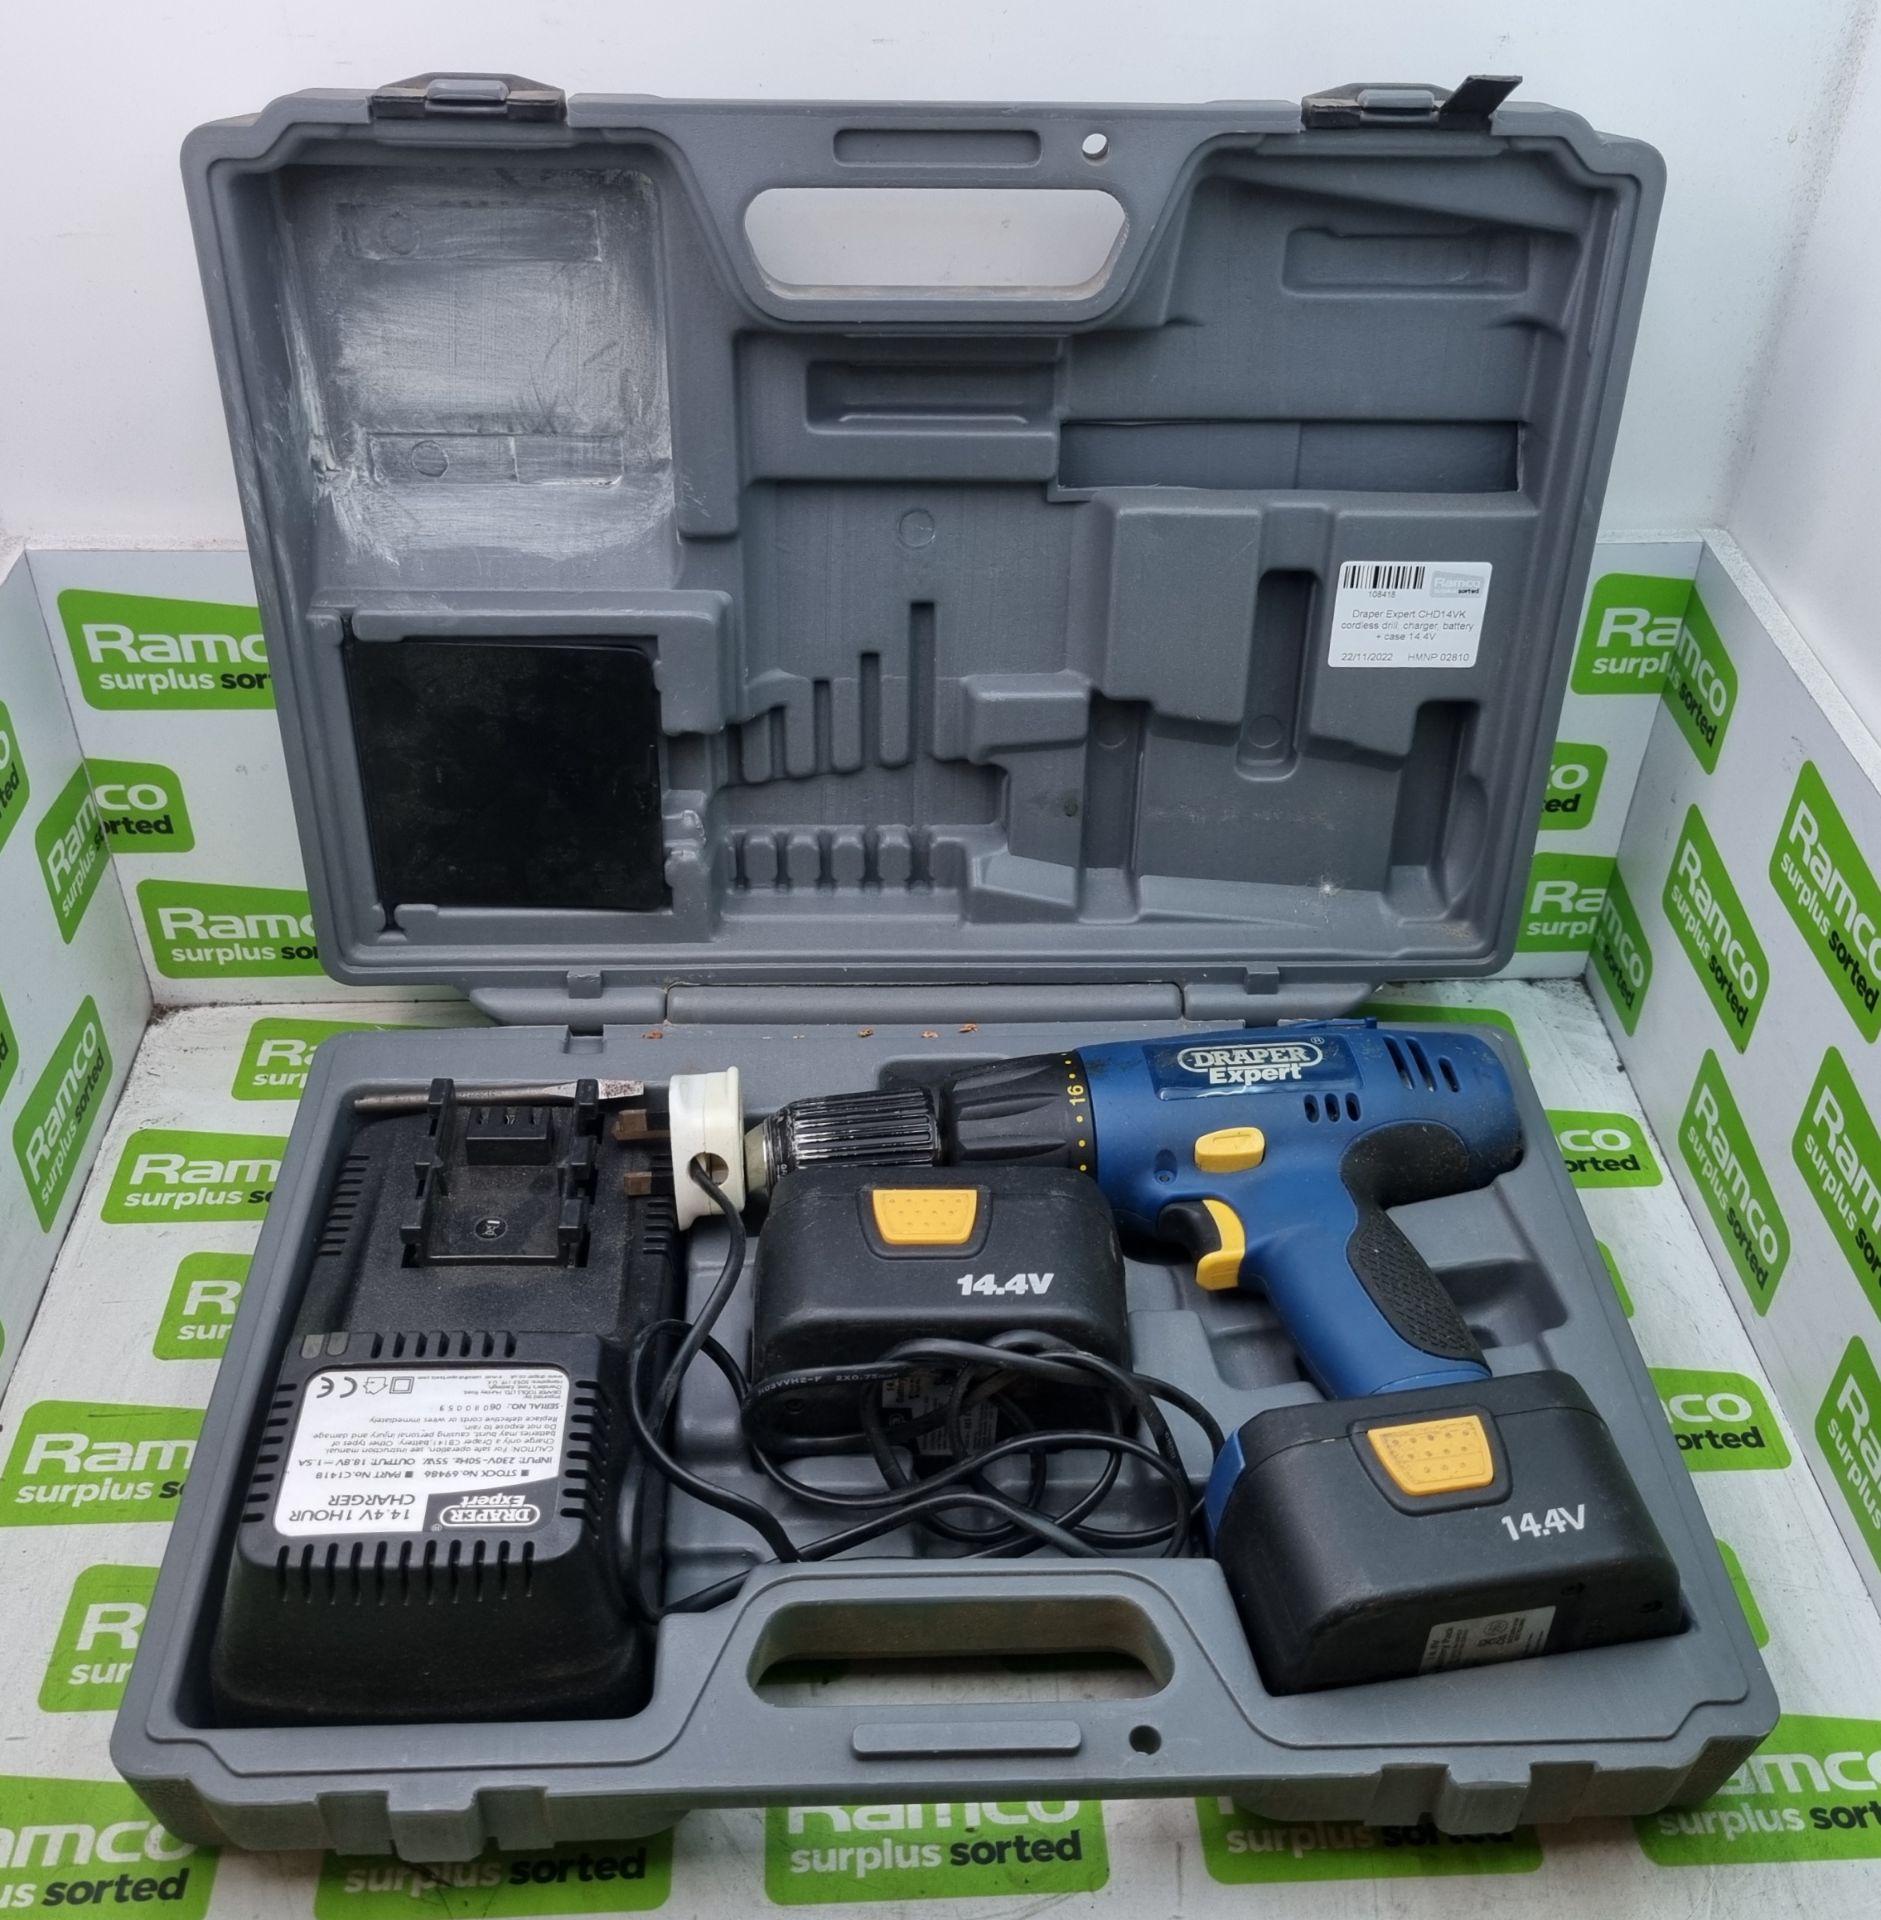 Draper Expert CHD14VK cordless drill, charger, battery + case 14.4V - Image 2 of 4